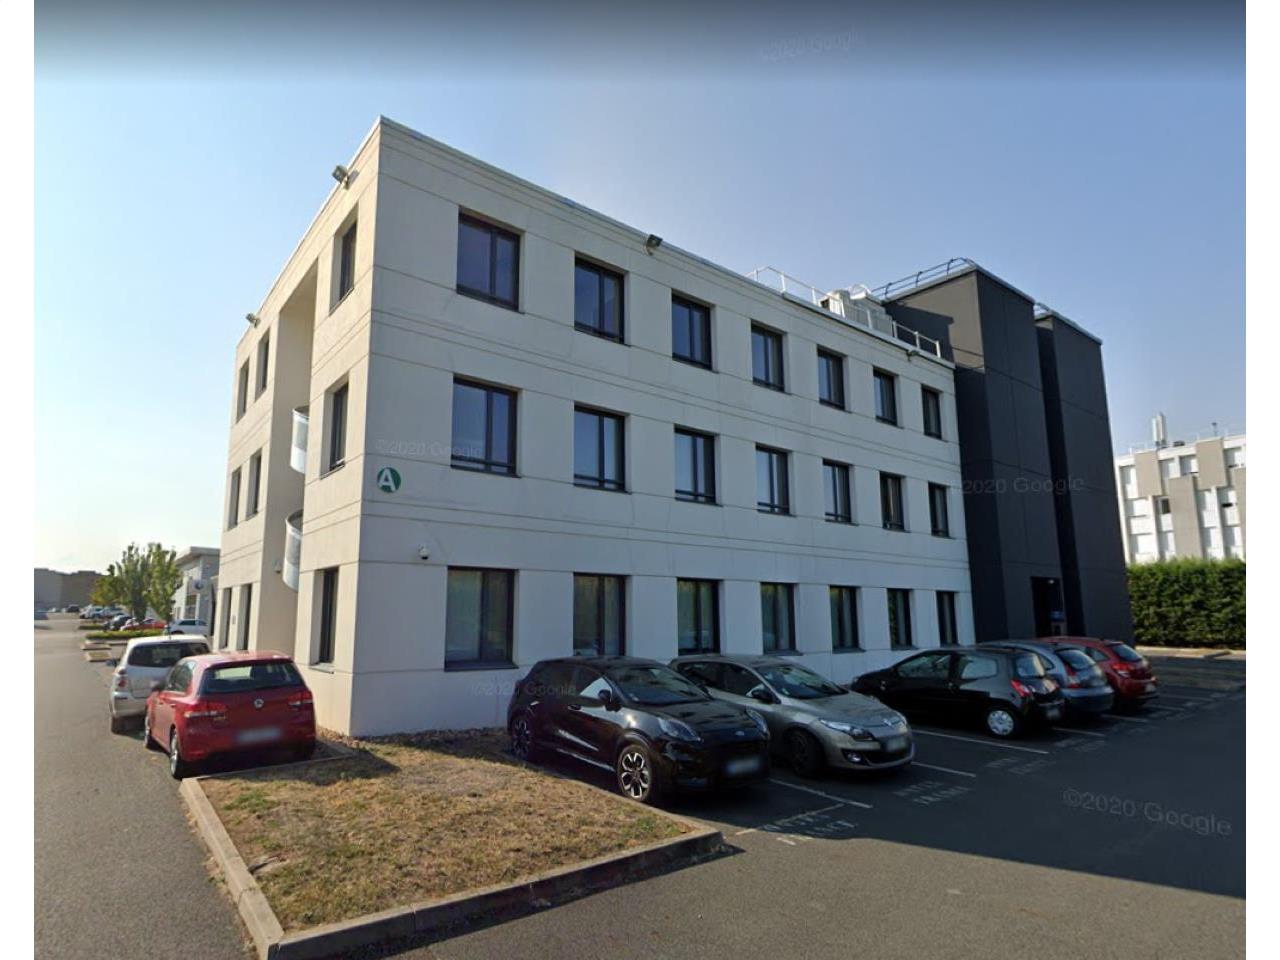 Location bureau Villefranche-sur-Saône 556m²